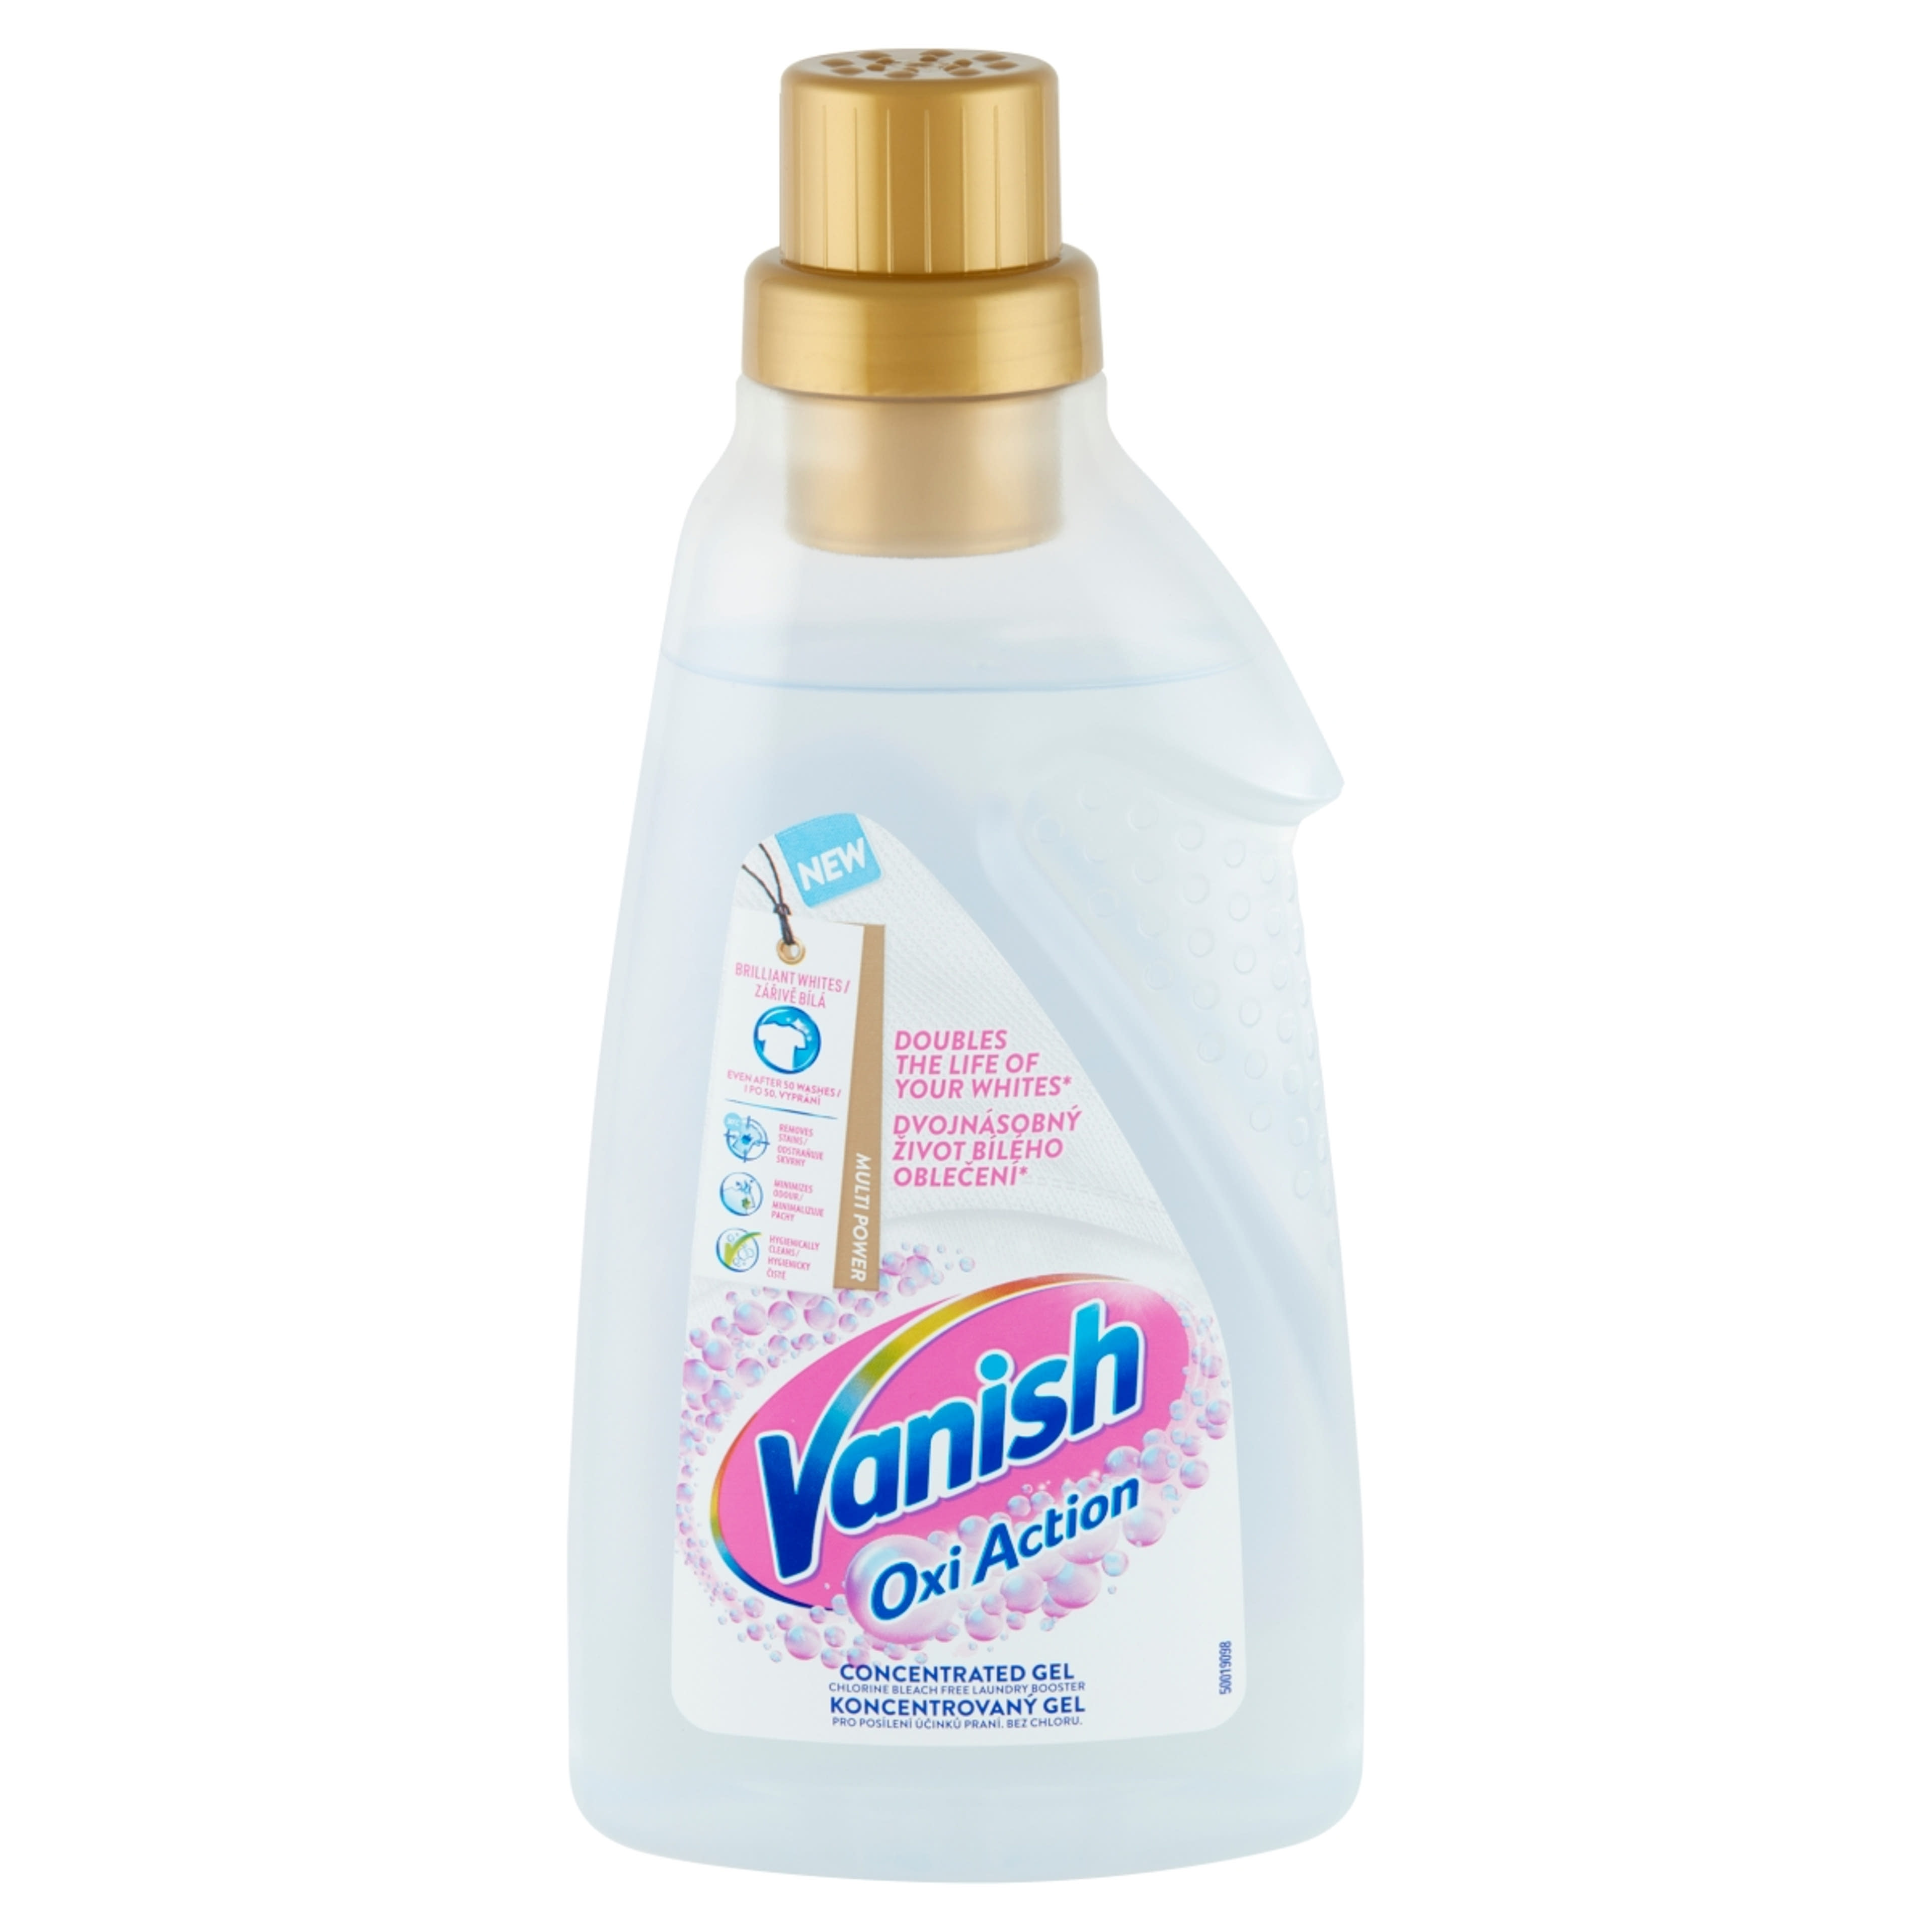 Vanish Oxi Action folteltávolító és fehérítő koncentrátum gél - 750 ml-2